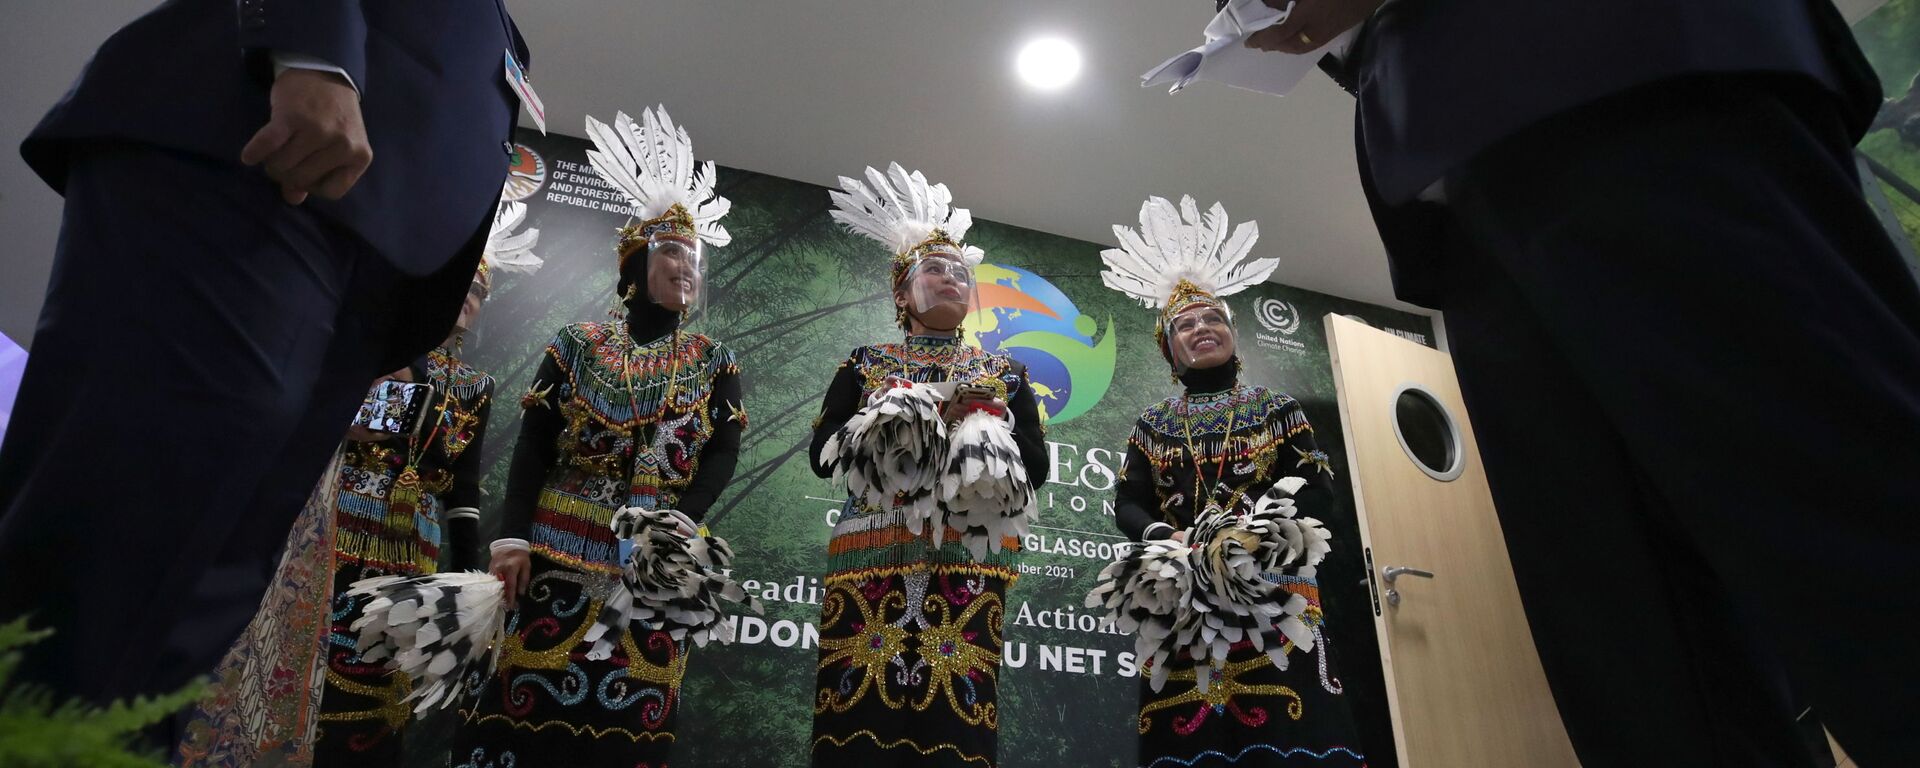  Танцоры традиционного индонезийского танца на конференции ООН COP26 в Глазго - Sputnik Mundo, 1920, 02.11.2021